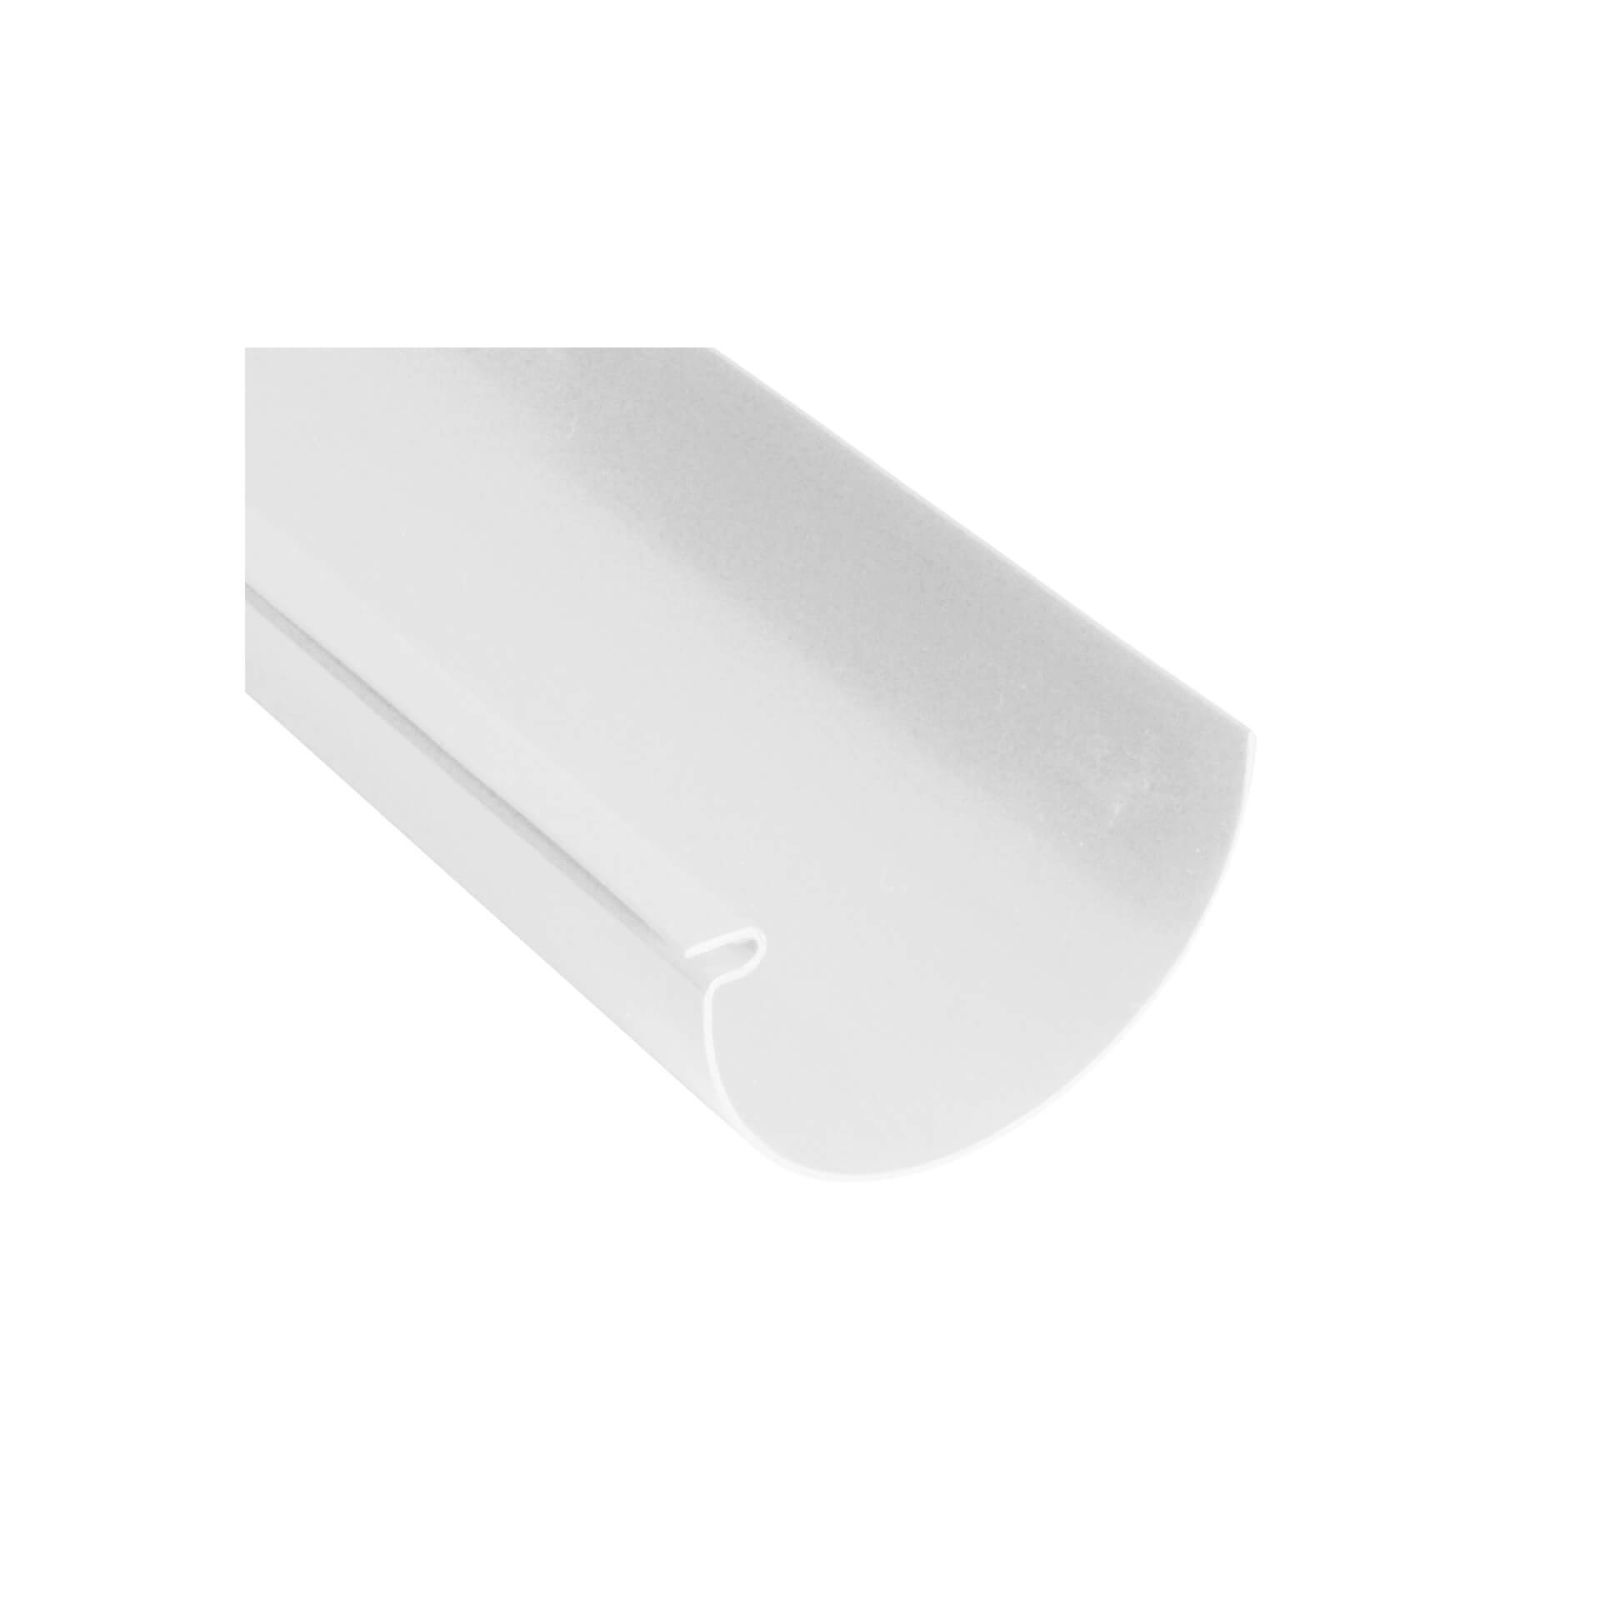 Kunststoff Dachrinnen Sparpaket 8 m | Ø 125/90 mm | Farbe Weiß